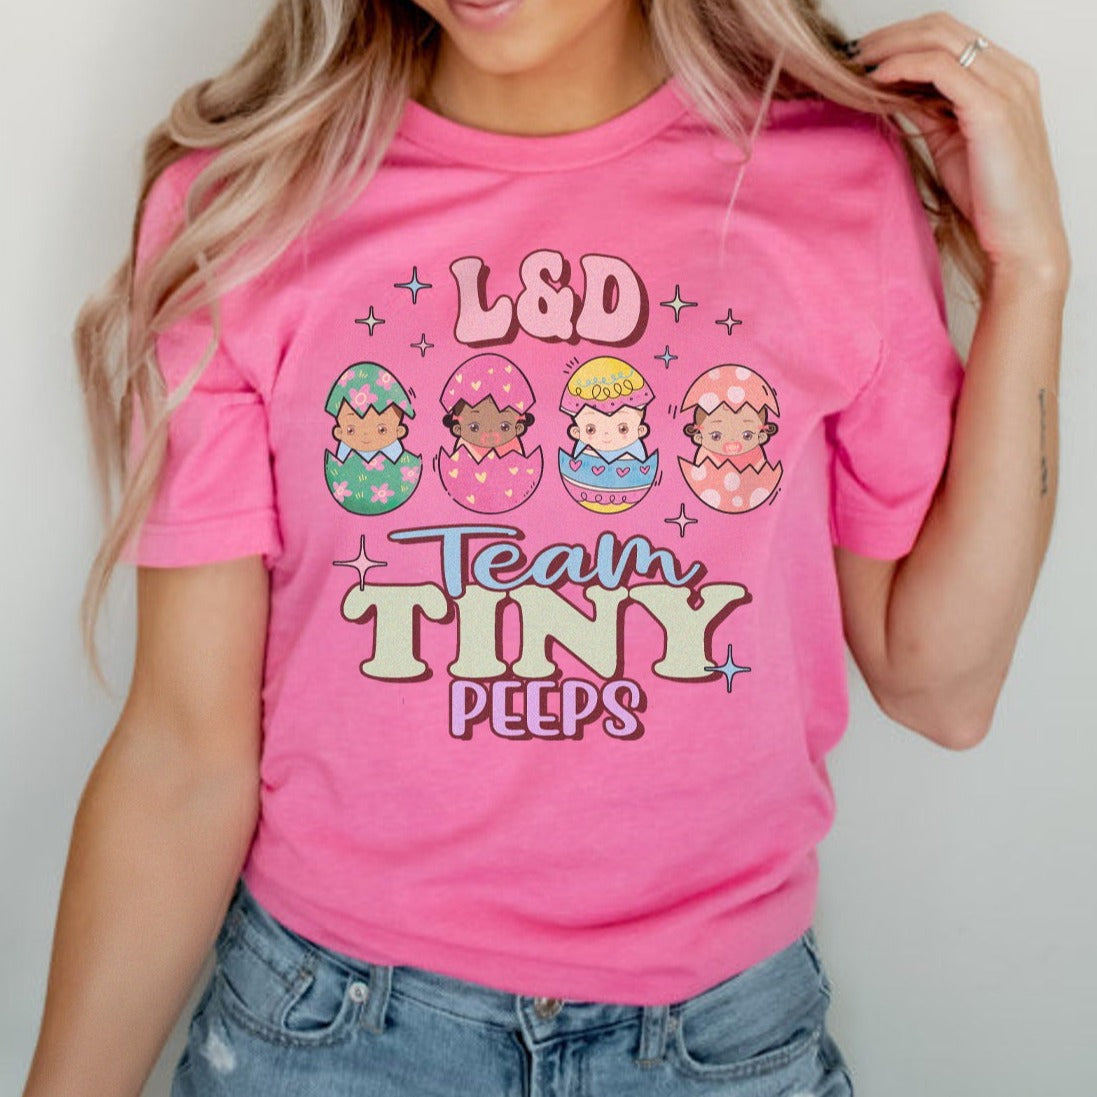 L&D Team Tiny Peeps T-Shirt